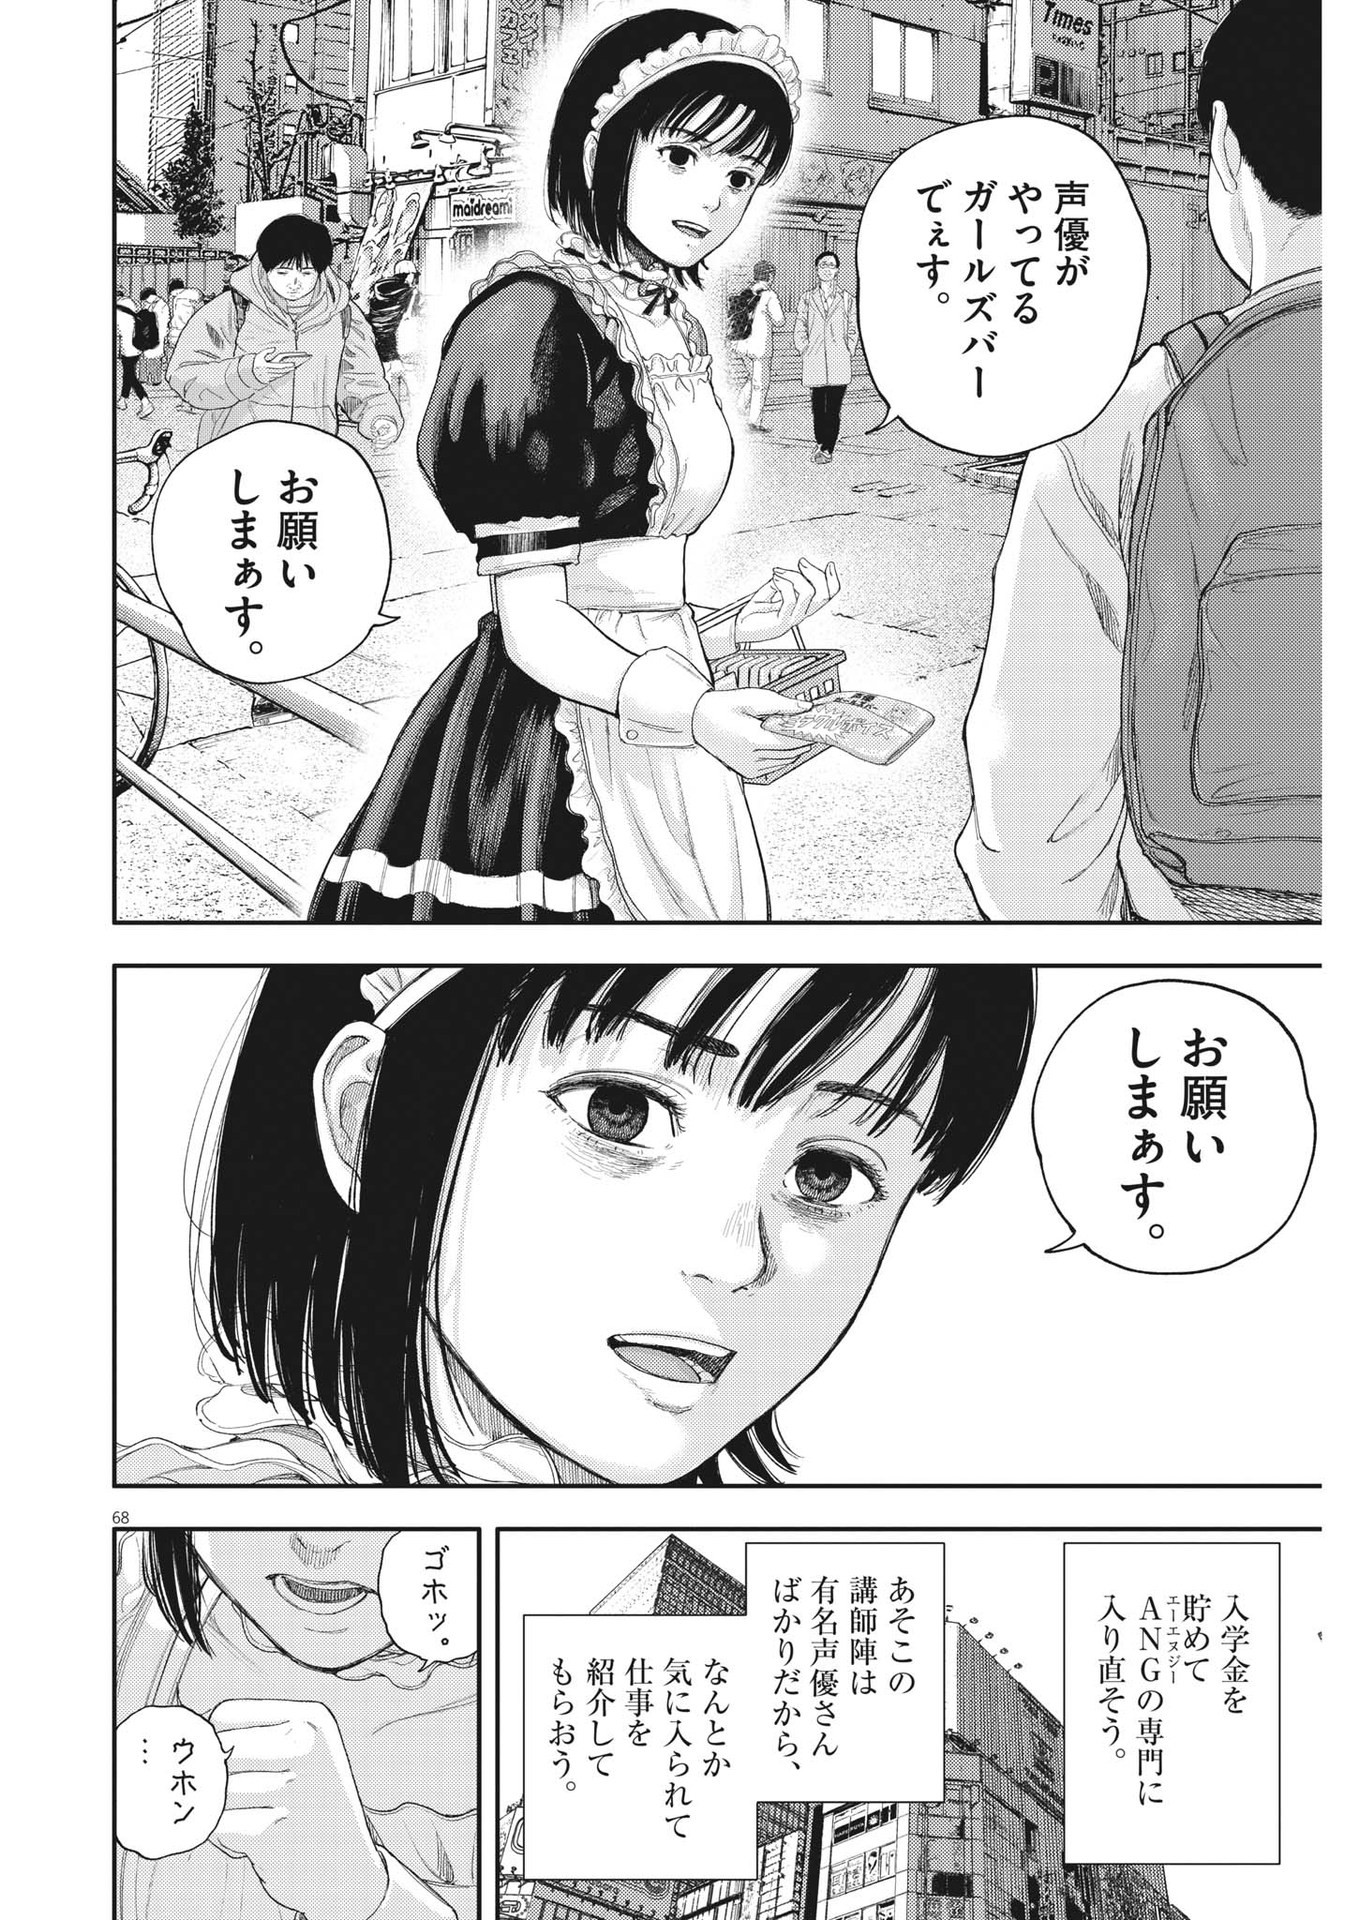 Yumenashi-sensei no Shinroshidou - Chapter 1 - Page 68